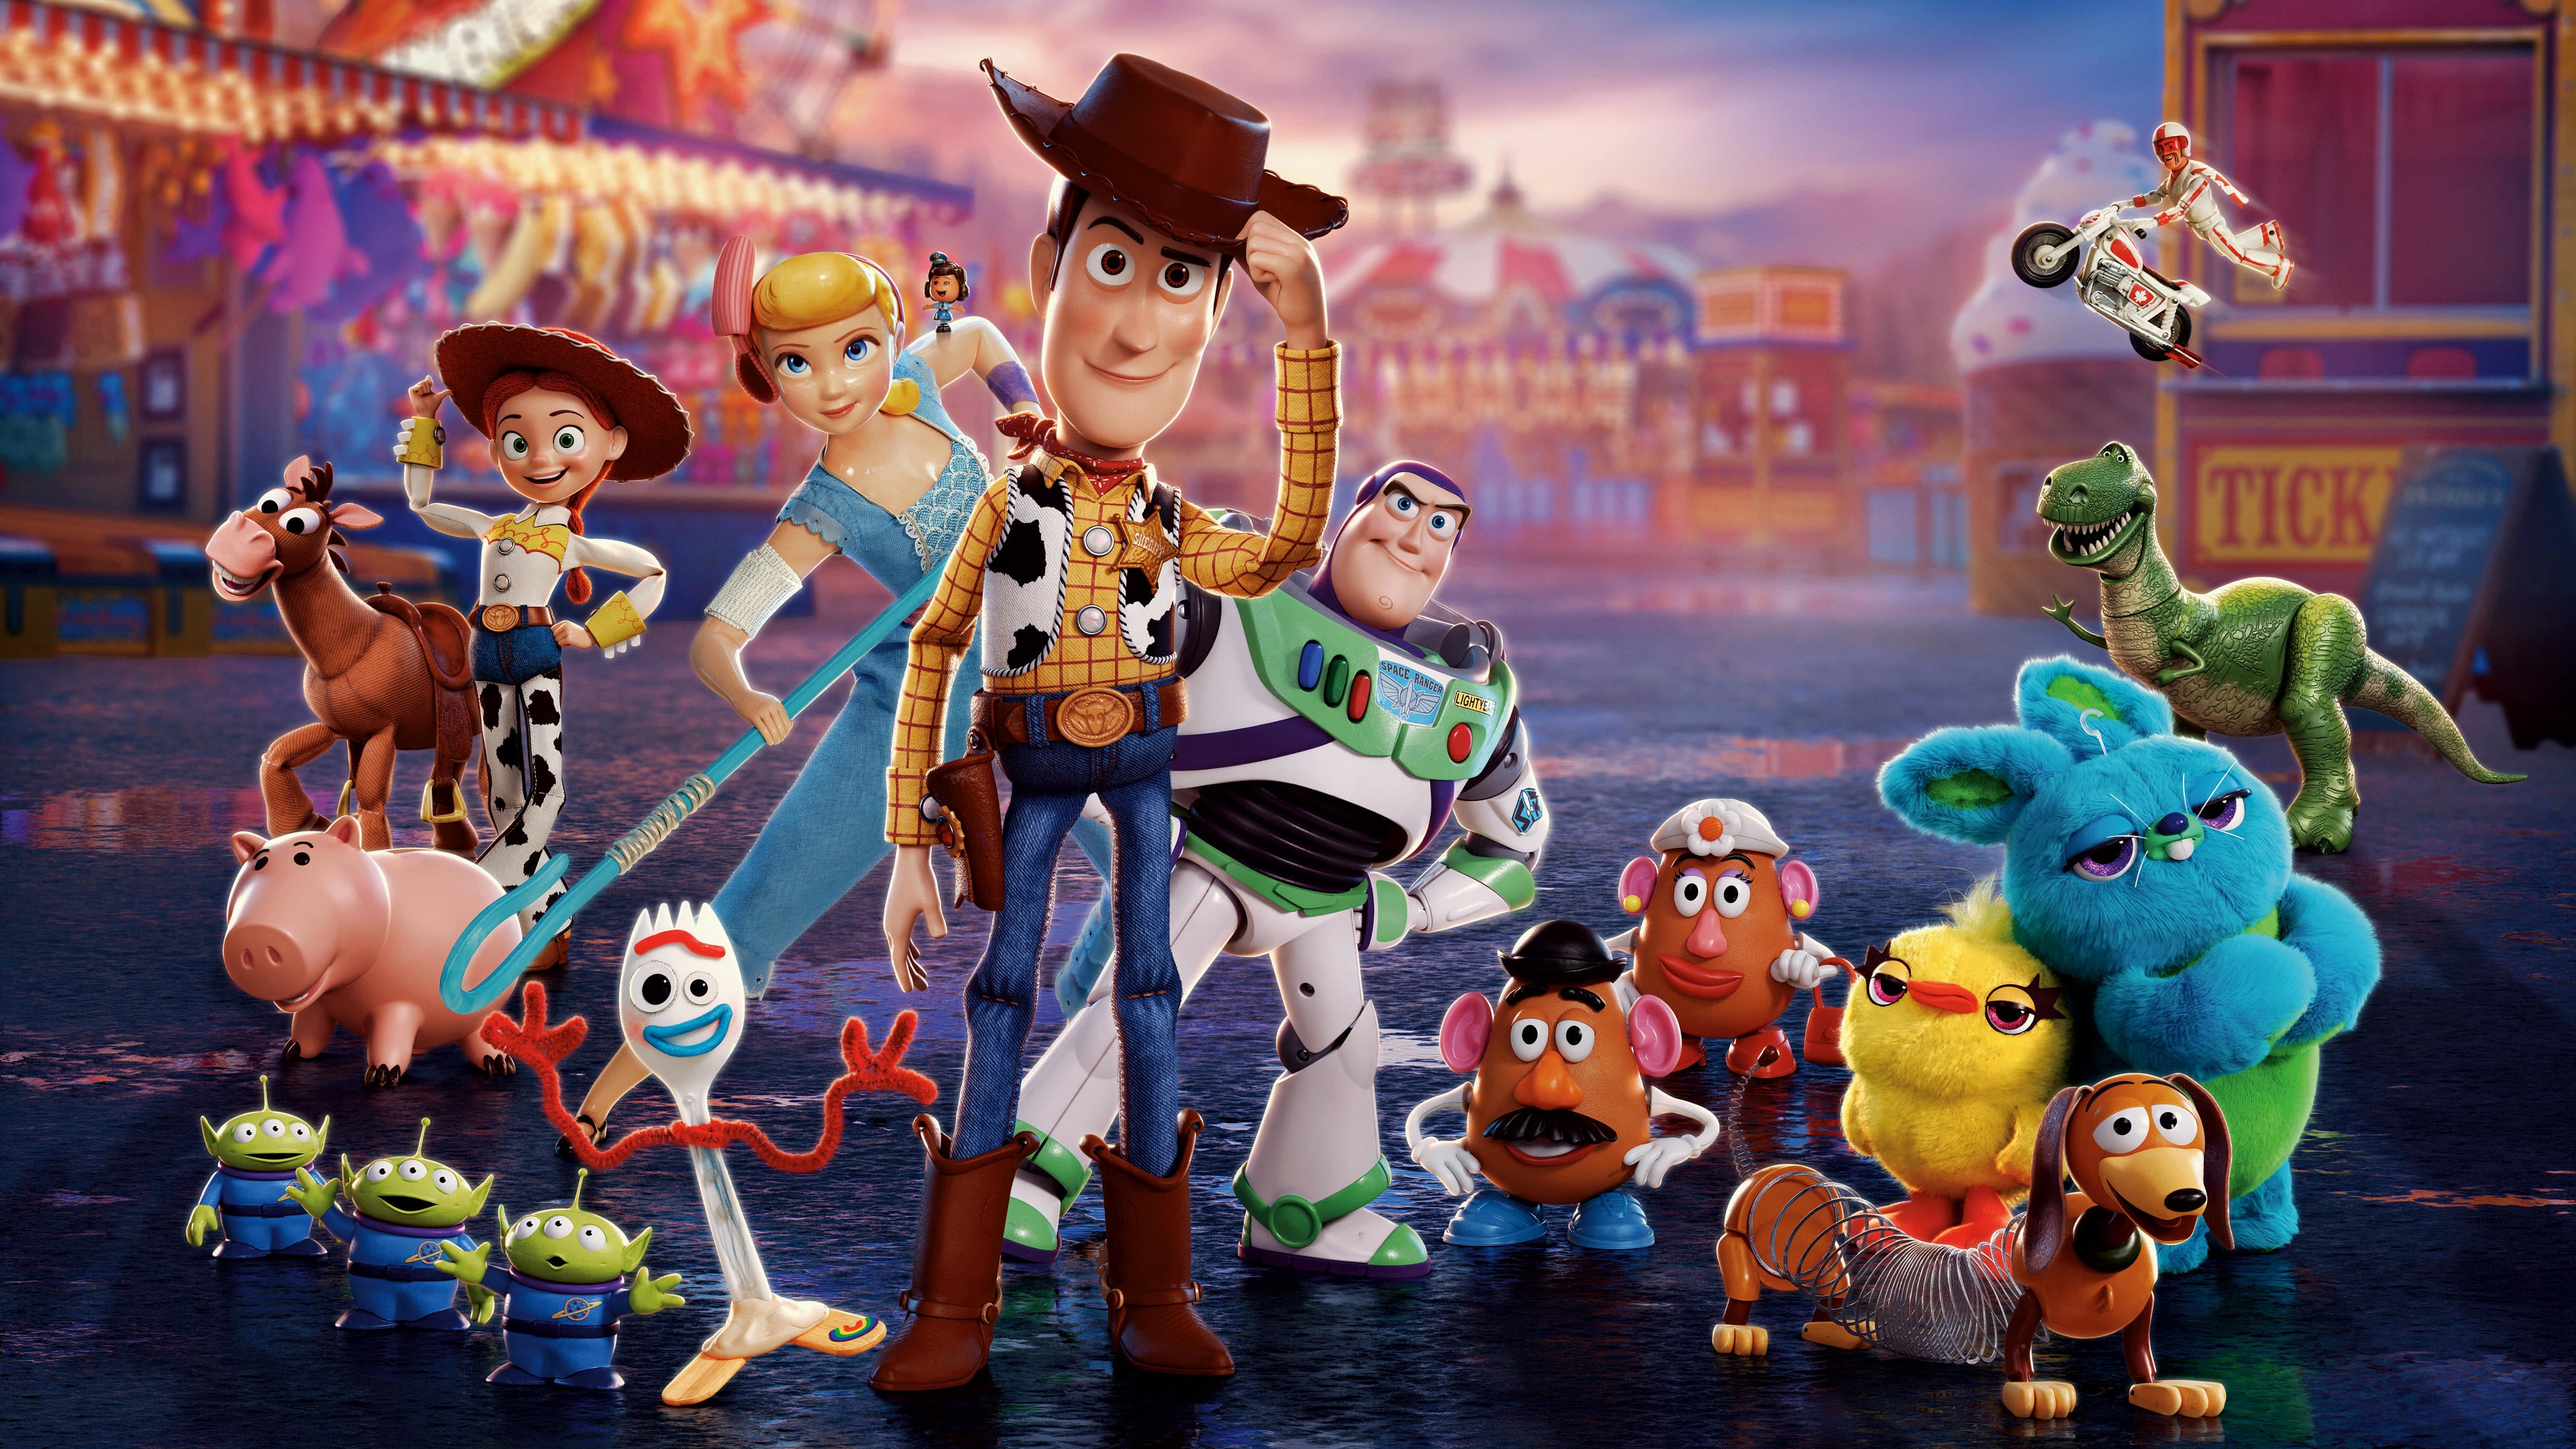 Bo Peep Buzz Lightyear Forky Toy Story Jessie Toy Story Woody Toy Story 3840x2160